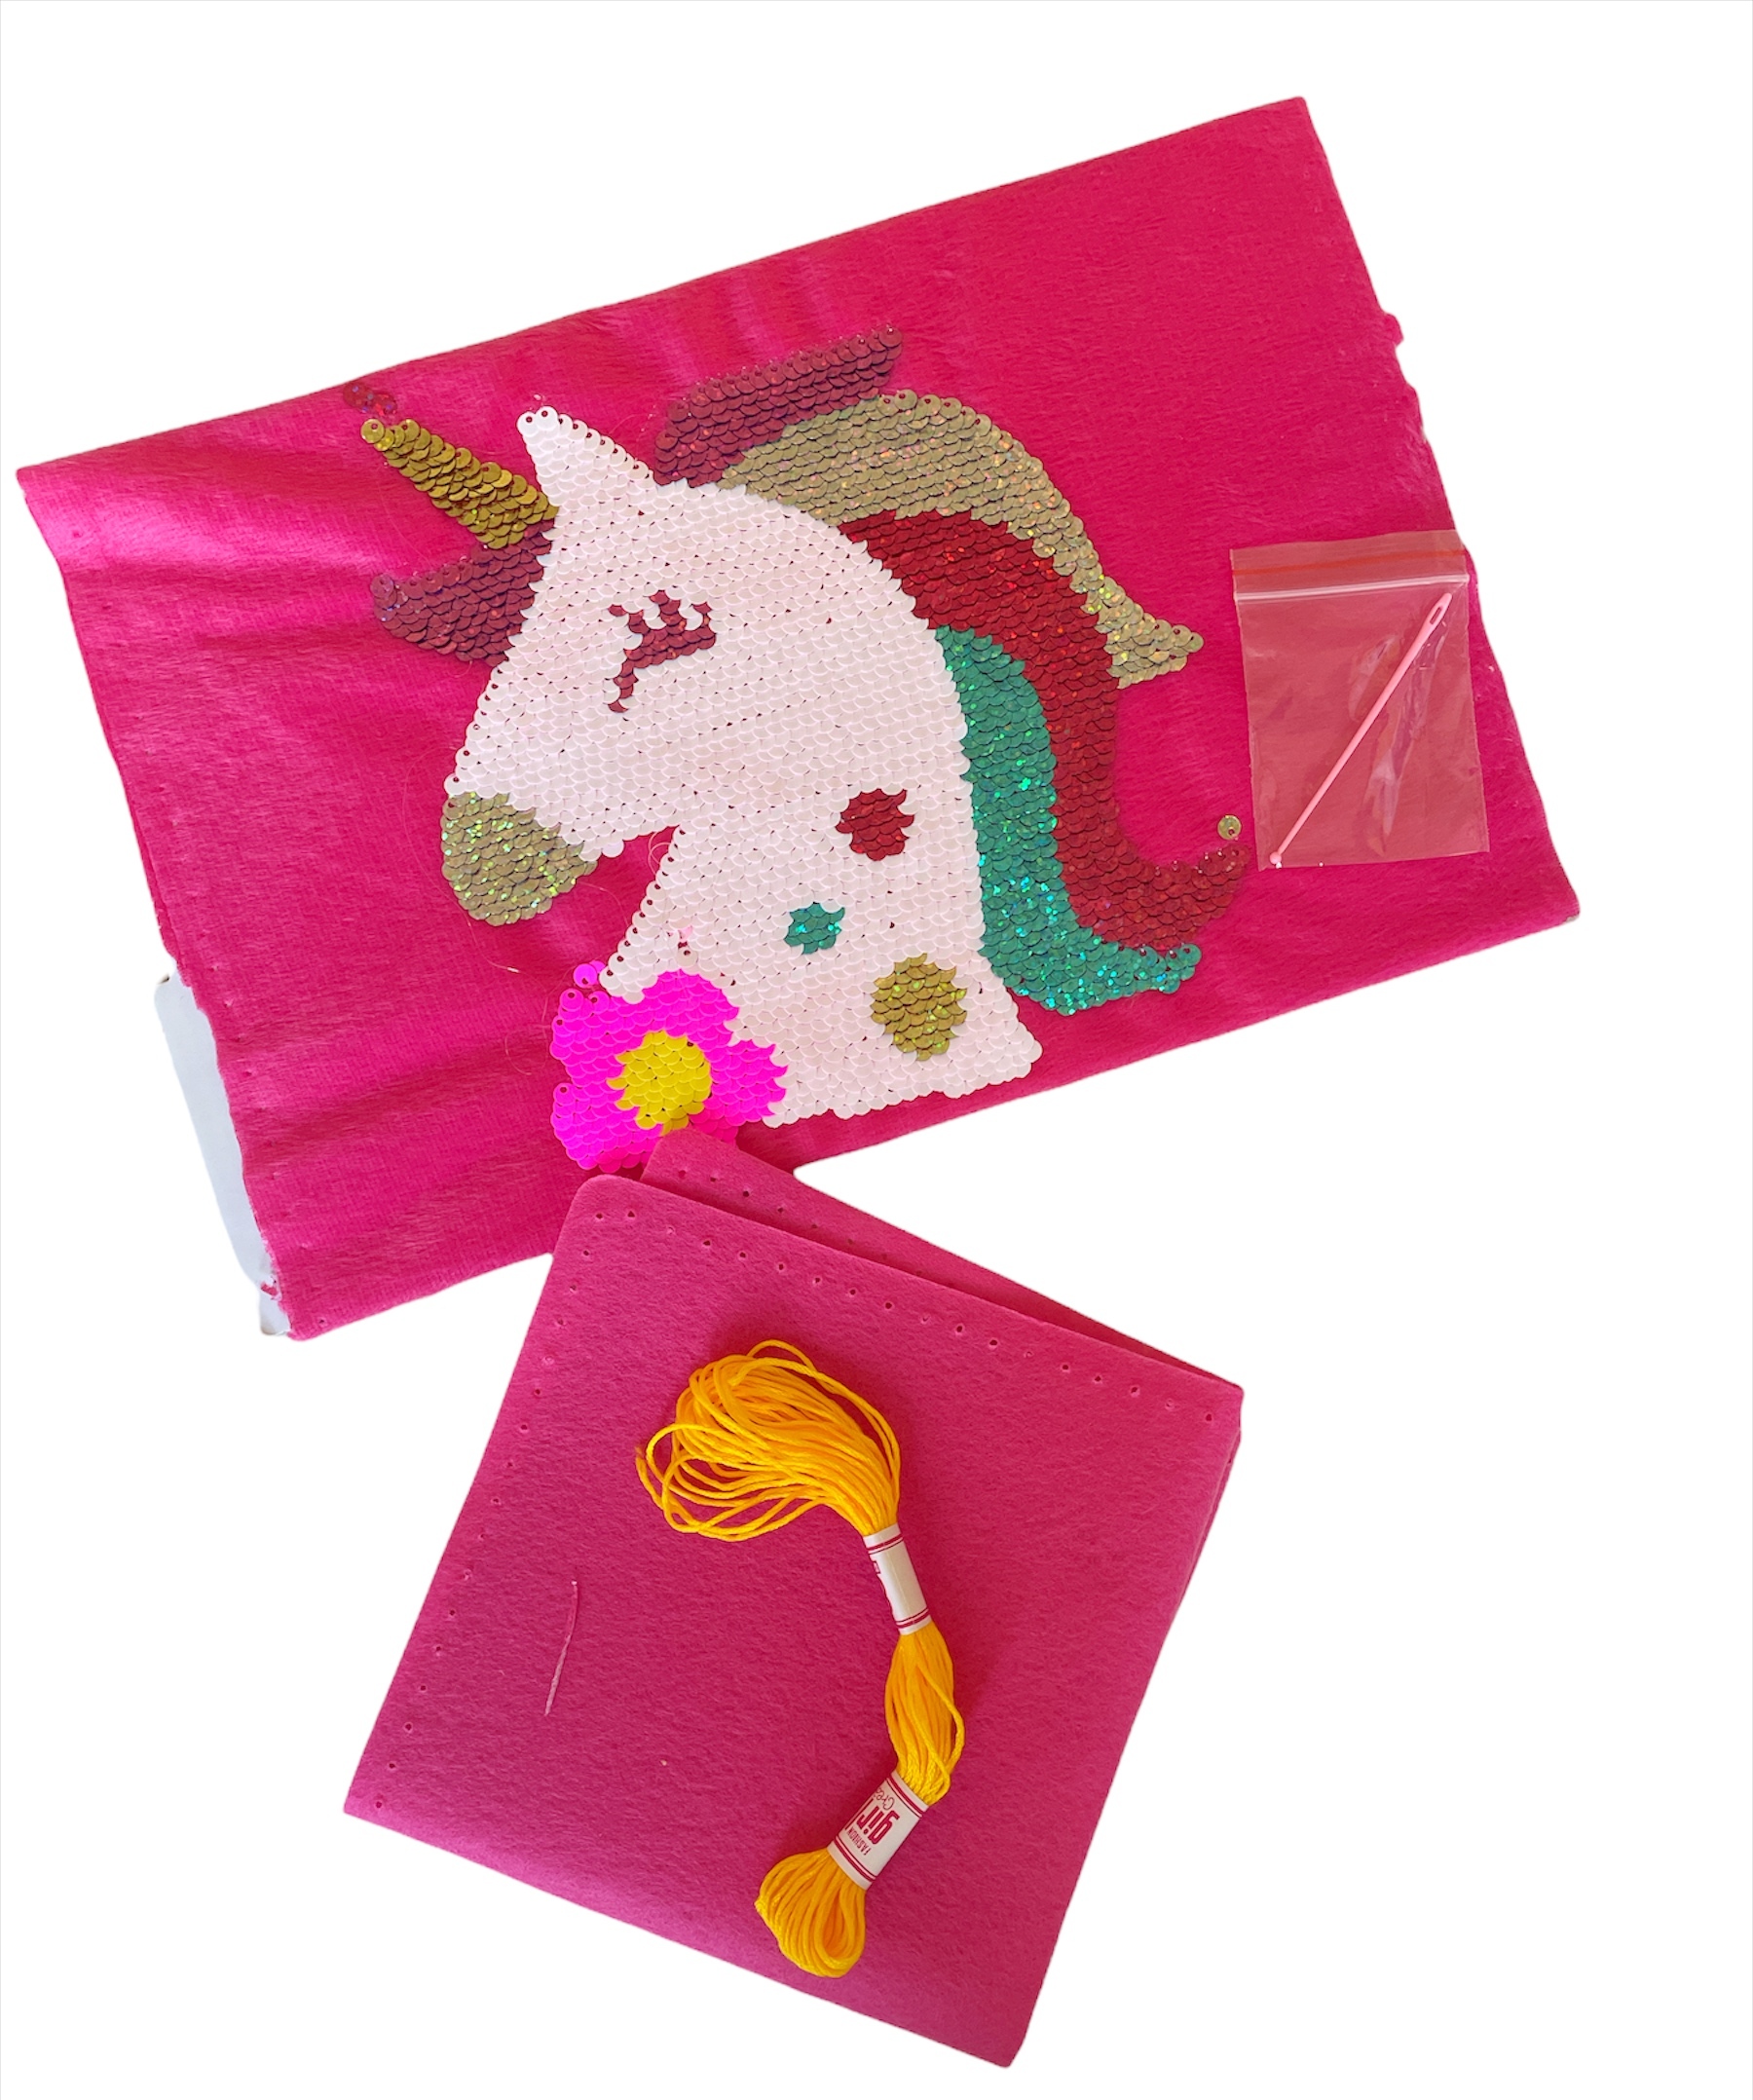 Детский набор для рукоделия Girls Creator для вышивания Подушки «Единорог» с пайетками